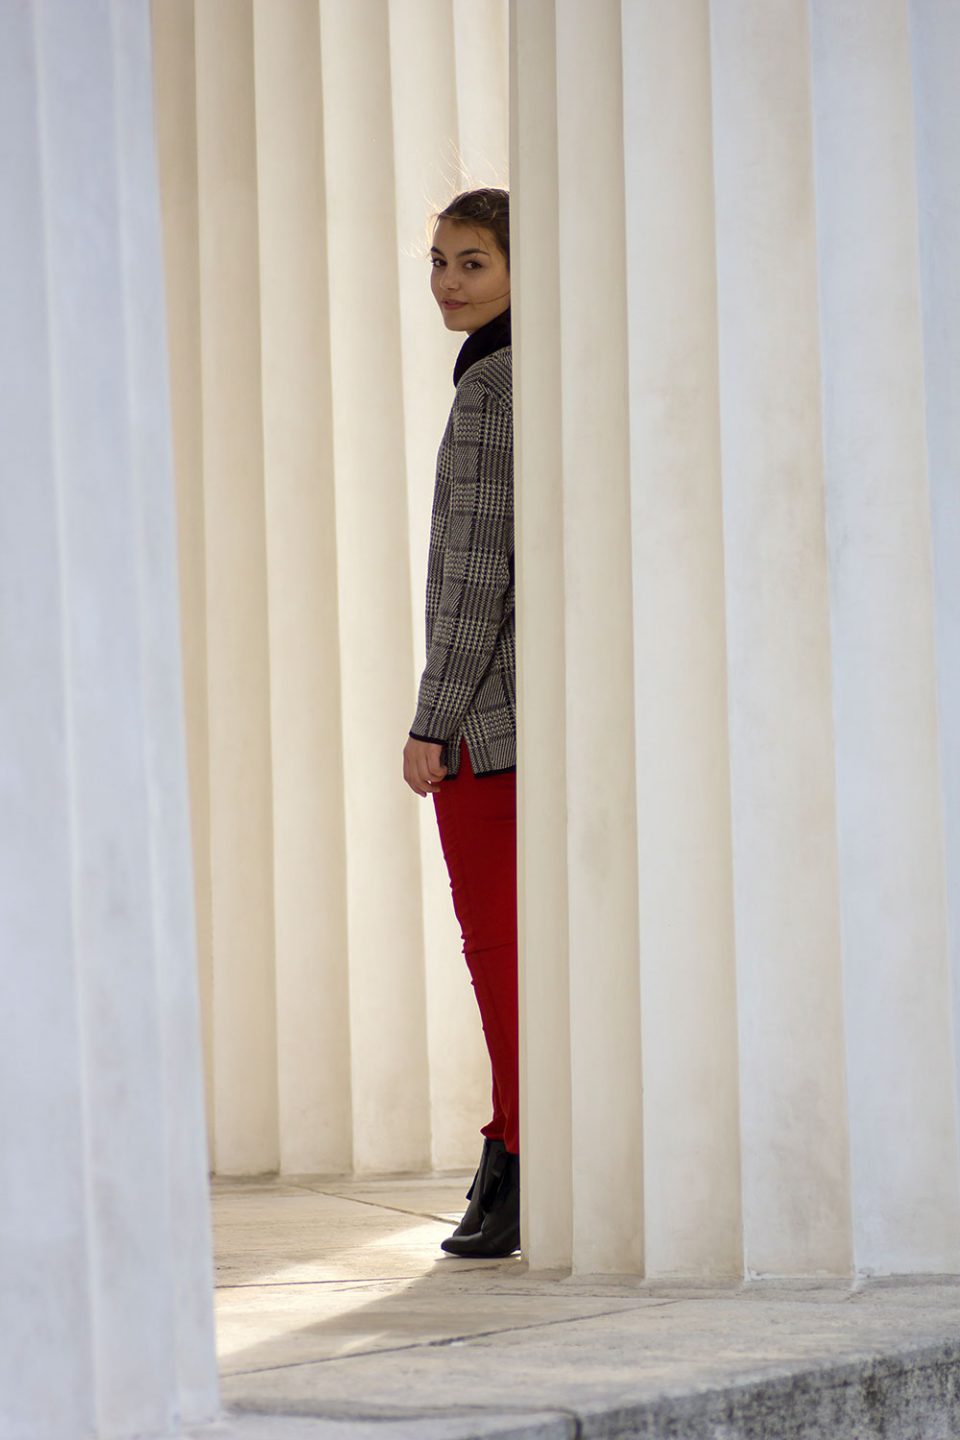 Dorie steht hinter einer Säule, trägt eine rote Hose vonl H&M, schwarze Heels von Mint&Berry und einen grauen Pullover